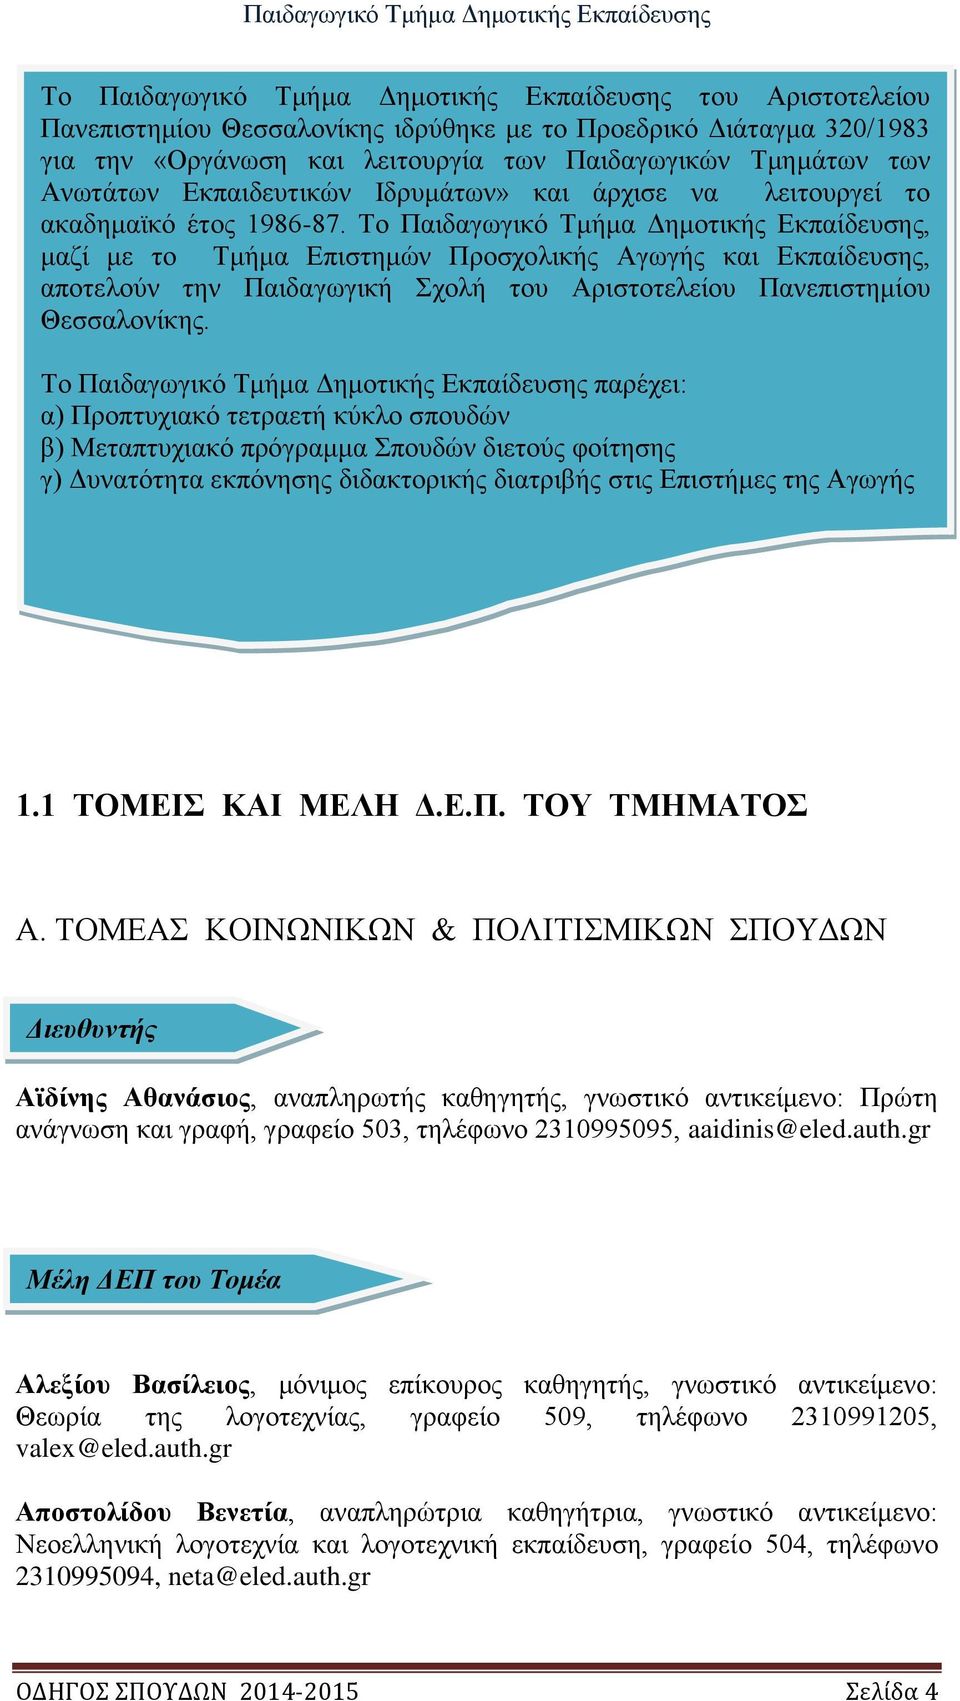 Το Παιδαγωγικό Τμήμα Δημοτικής Εκπαίδευσης, μαζί με το Τμήμα Επιστημών Προσχολικής Αγωγής και Εκπαίδευσης, αποτελούν την Παιδαγωγική Σχολή του Αριστοτελείου Πανεπιστημίου Θεσσαλονίκης.